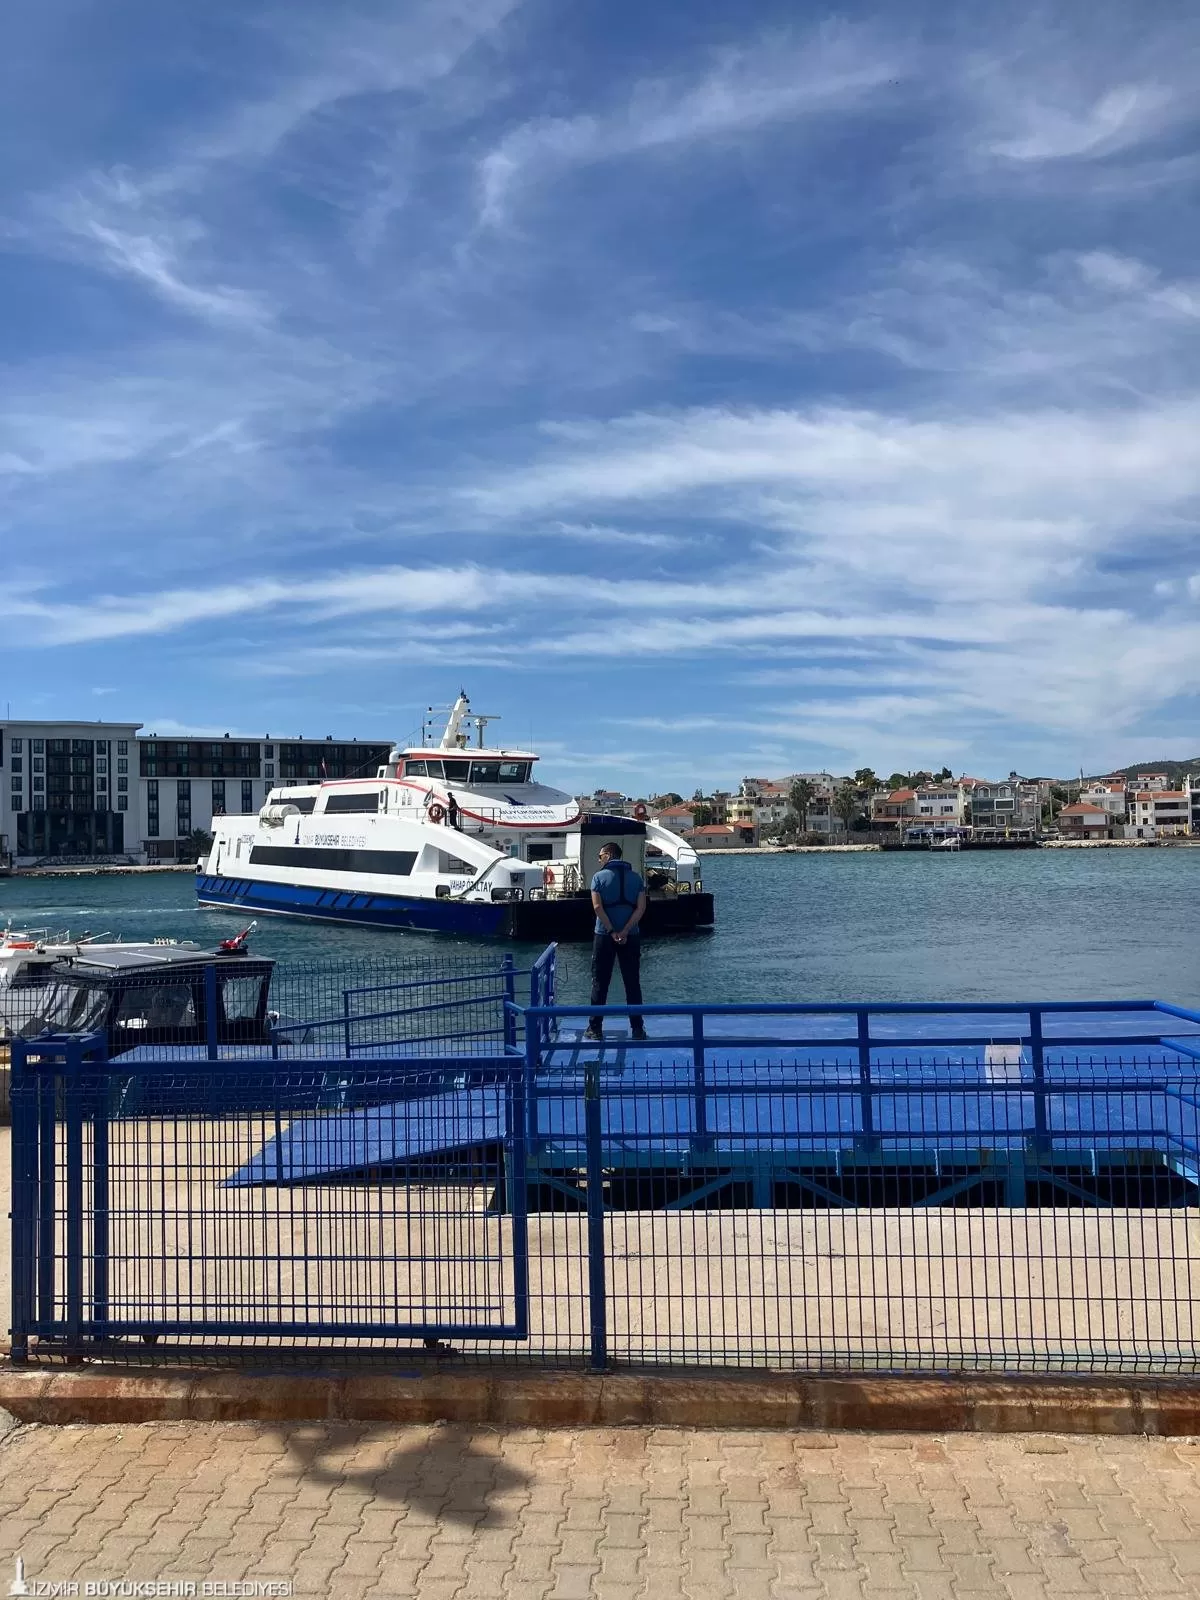 İzmir Büyükşehir Belediyesi ve İZDENİZ işbirliği ile engelli yurttaşlar için yaz boyunca her salı günü Mordoğan ve Foça'ya ücretsiz gemi turları düzenlenecek.